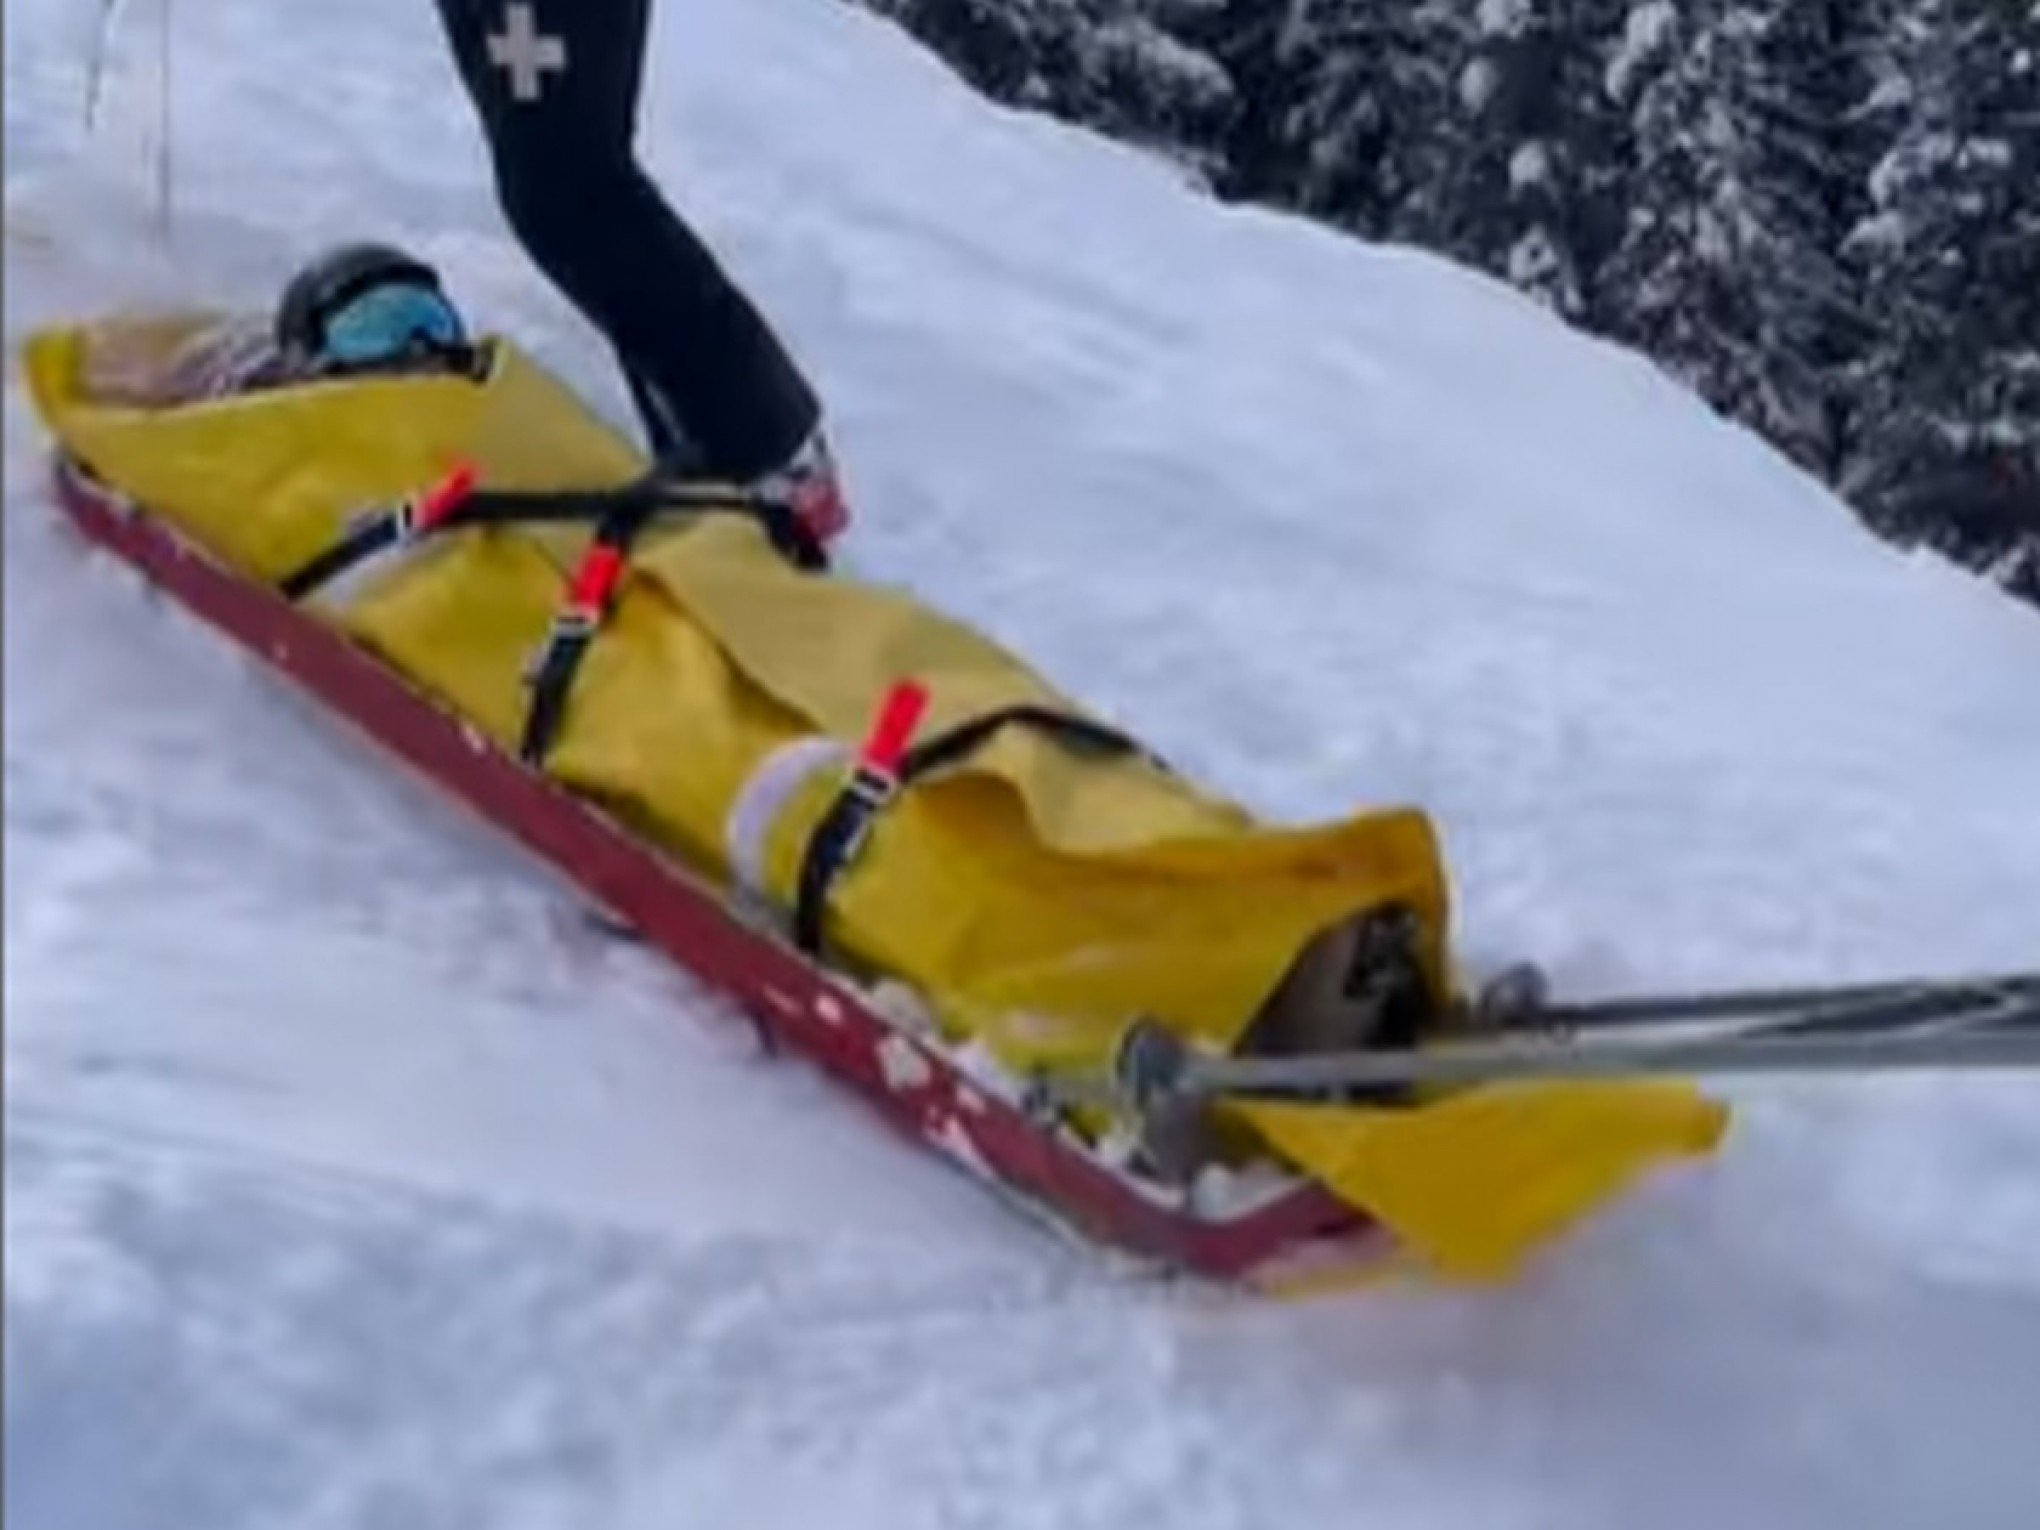 Luciana Gimenez divulga vídeo do momento em que foi resgatada de acidente na neve